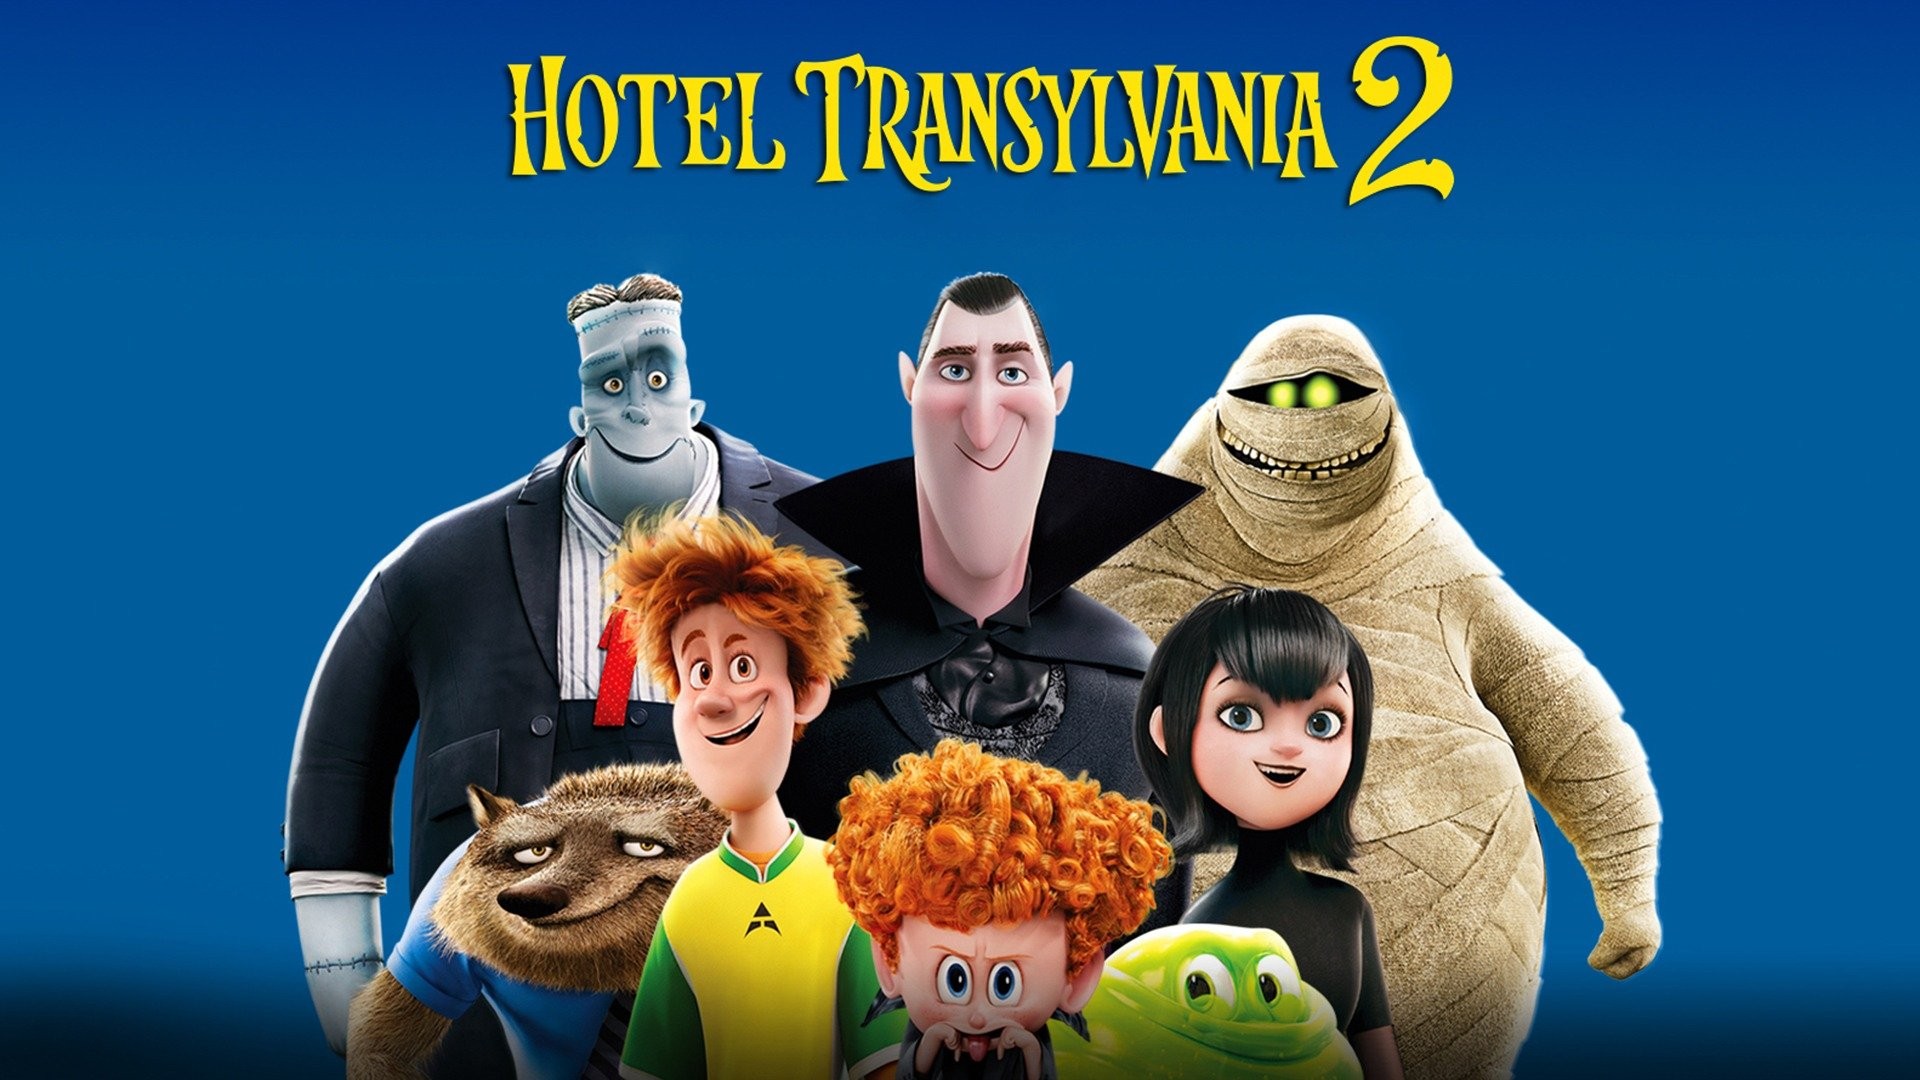 Movie review  Hotel Transylvania 2: Animated sequel funnier than original